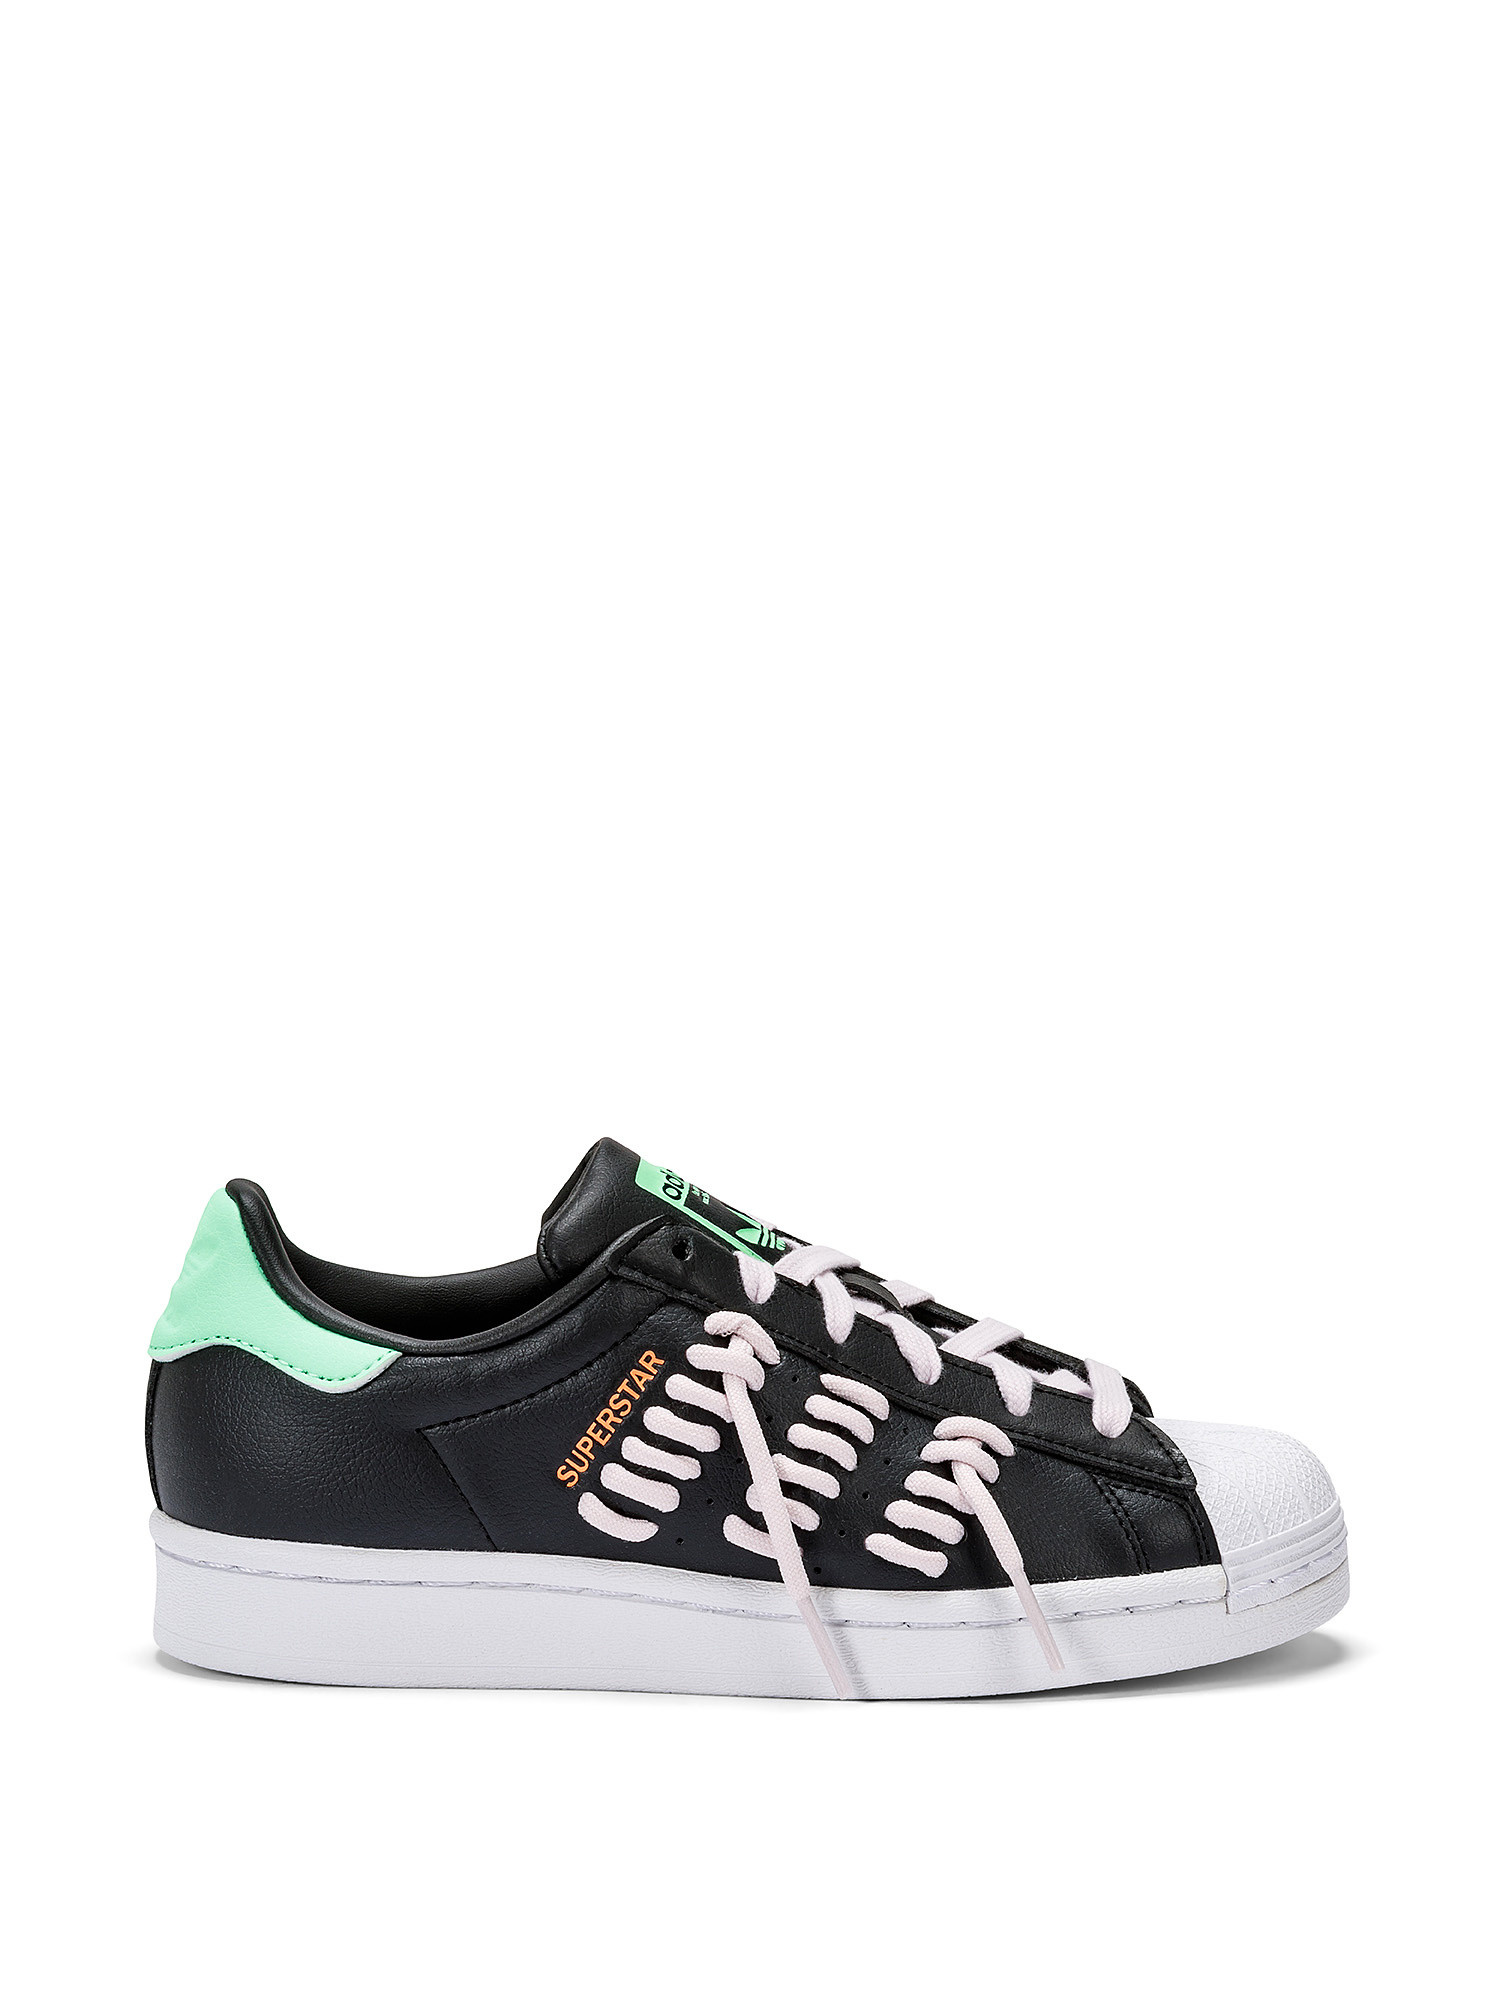 Adidas - Superstar Shoes, Black, large image number 0